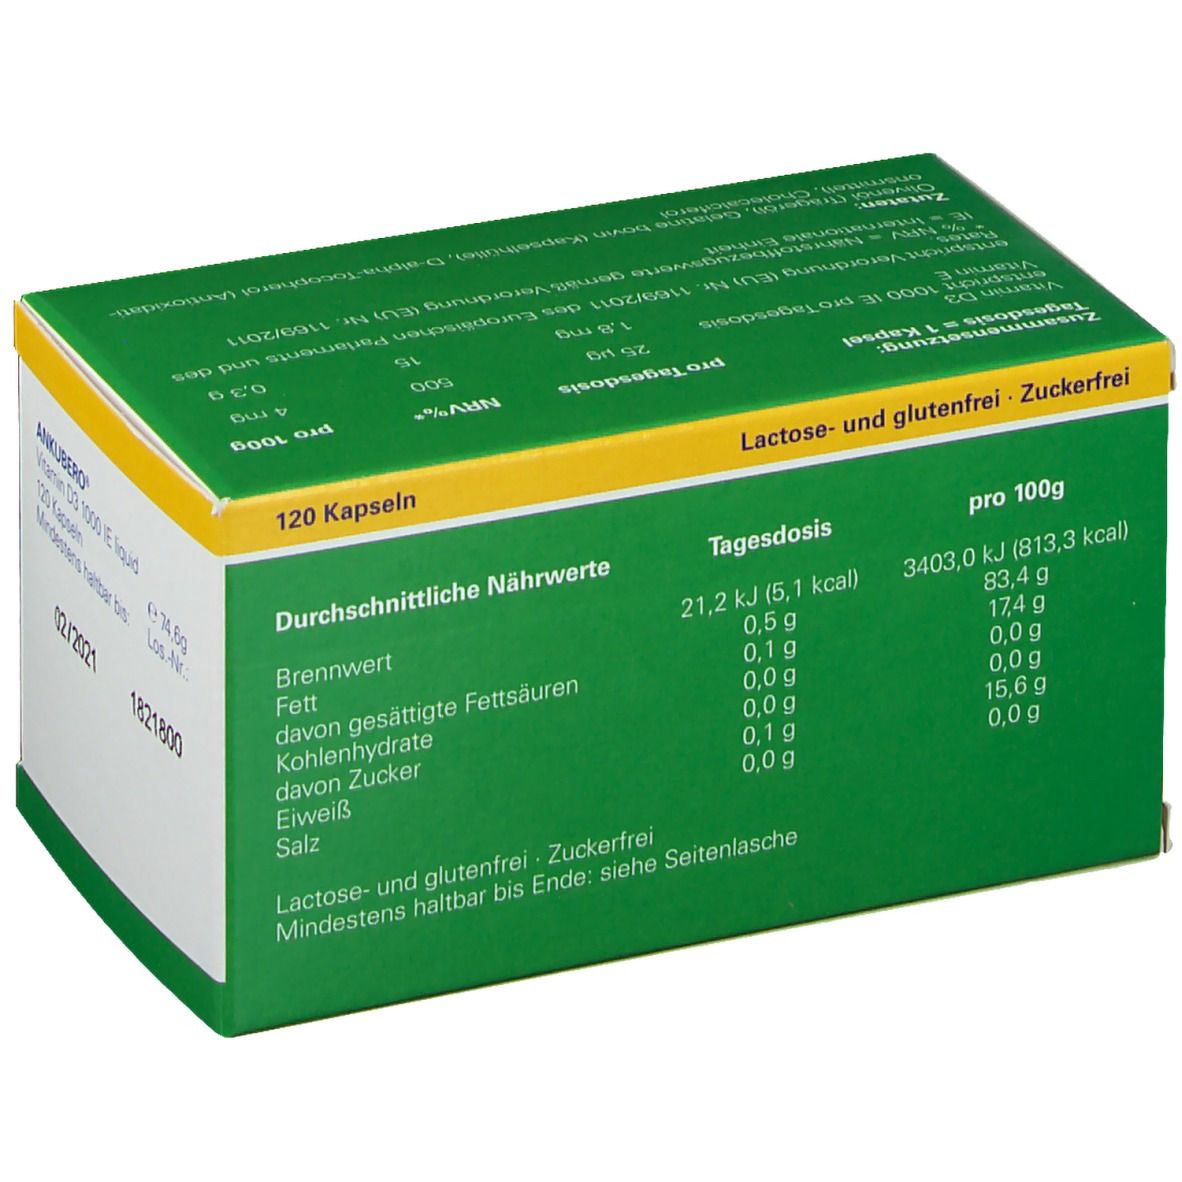 ankubero® Vitamin D3 1000 I.E. Liquidkapseln